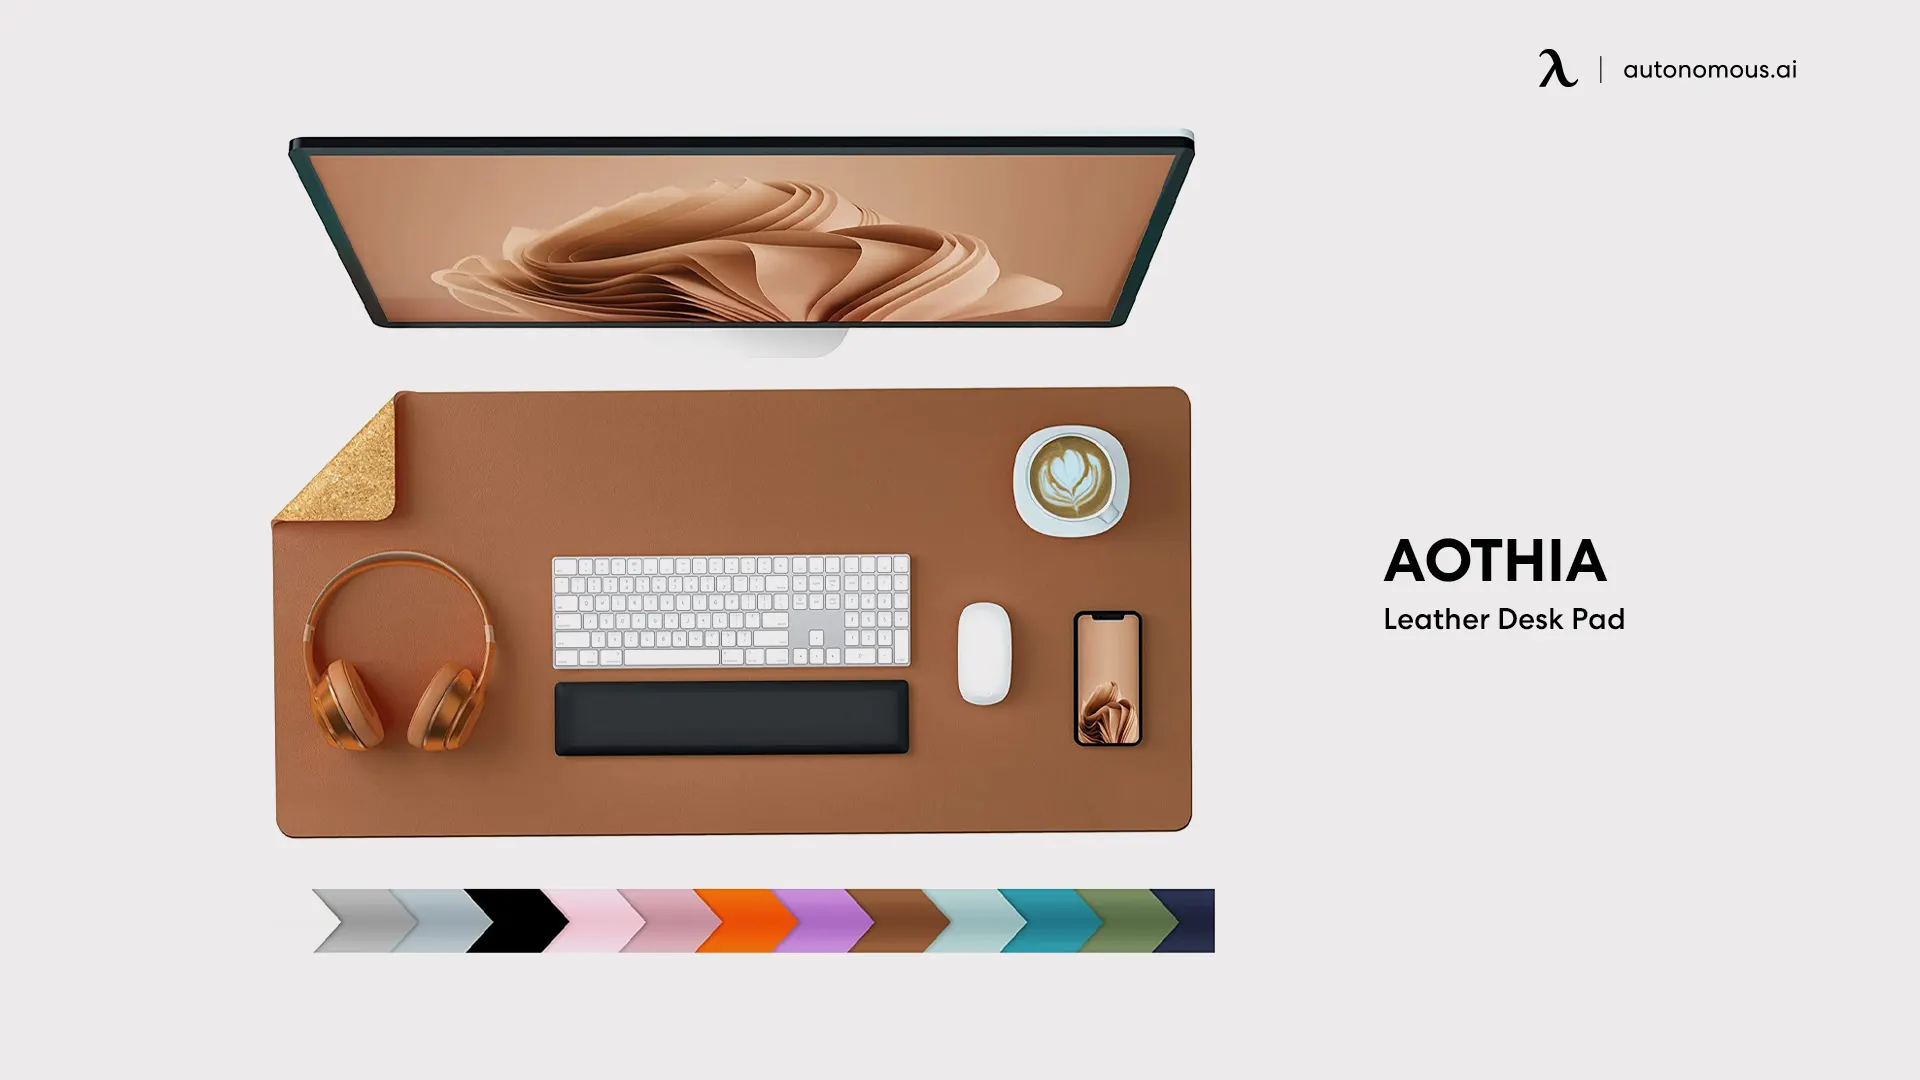 Aothia Leather Desk Pad - best desk mat